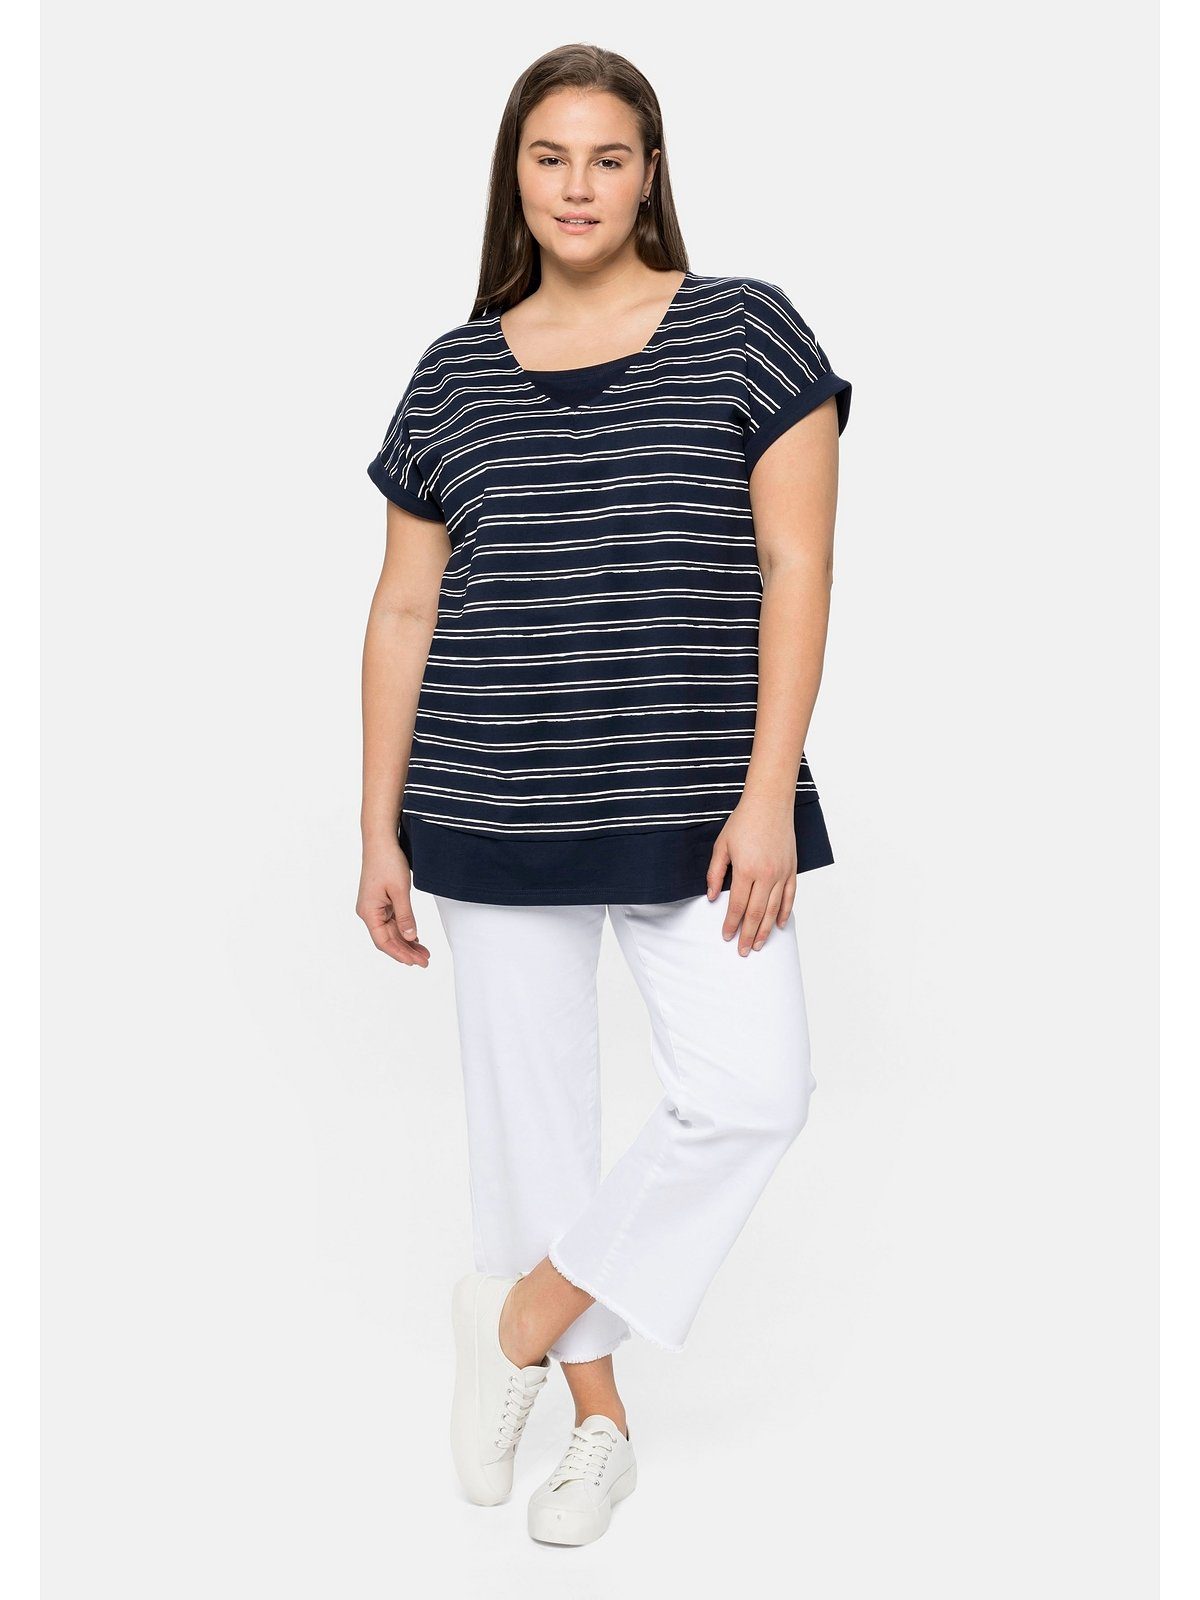 Große Sheego T-Shirt Größen reiner Lagenlook, aus Baumwolle im marine-weiß